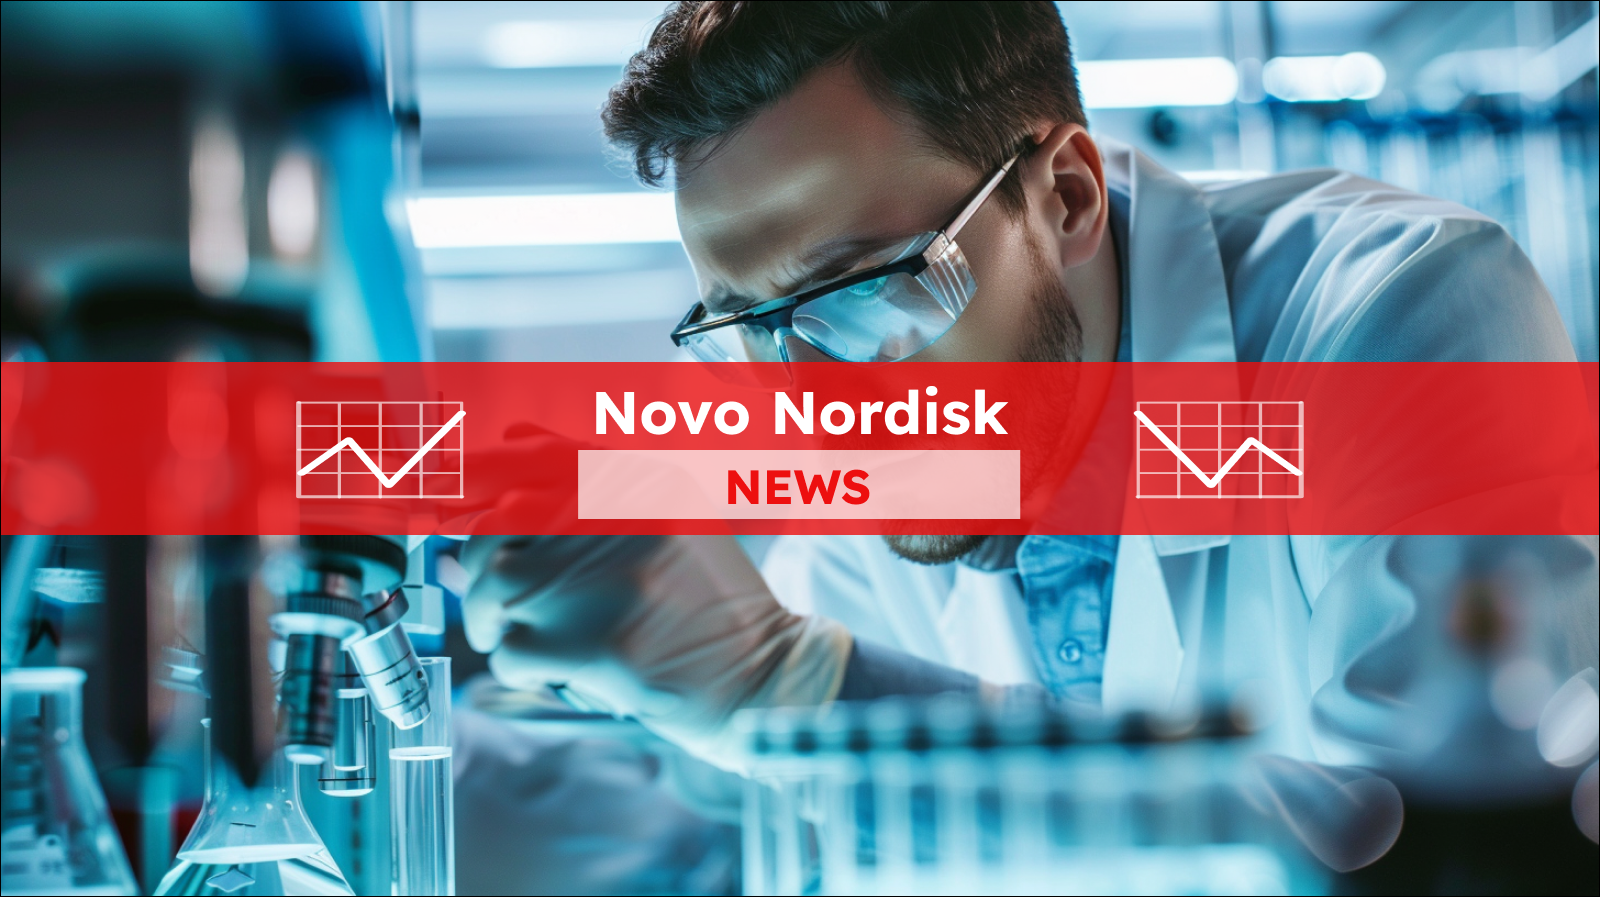 Wissenschaftler mit Brille und Laborkittel arbeitet mit Laborgeräten in einer geschäftigen Forschungseinrichtung, mit einem roten Banner Novo Nordisk NEWS darüber